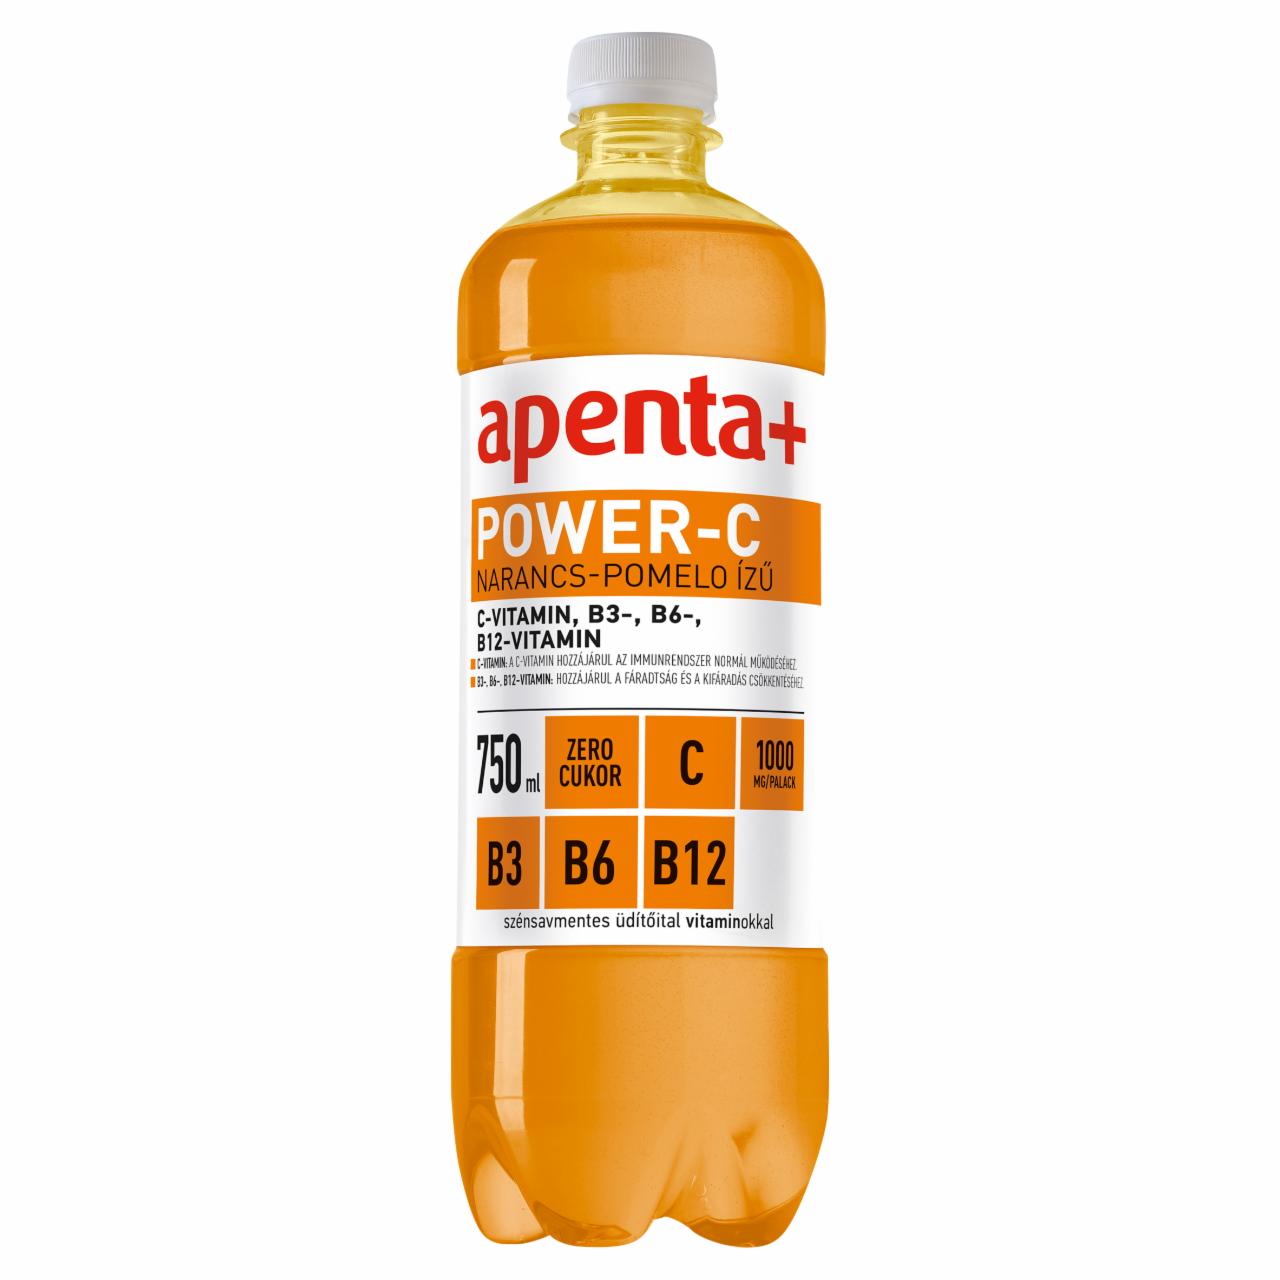 Képek - Apenta+ Power-C narancs-pomelo ízű szénsavmentes üdítőital édesítőszerekkel, vitaminokkal 750 ml